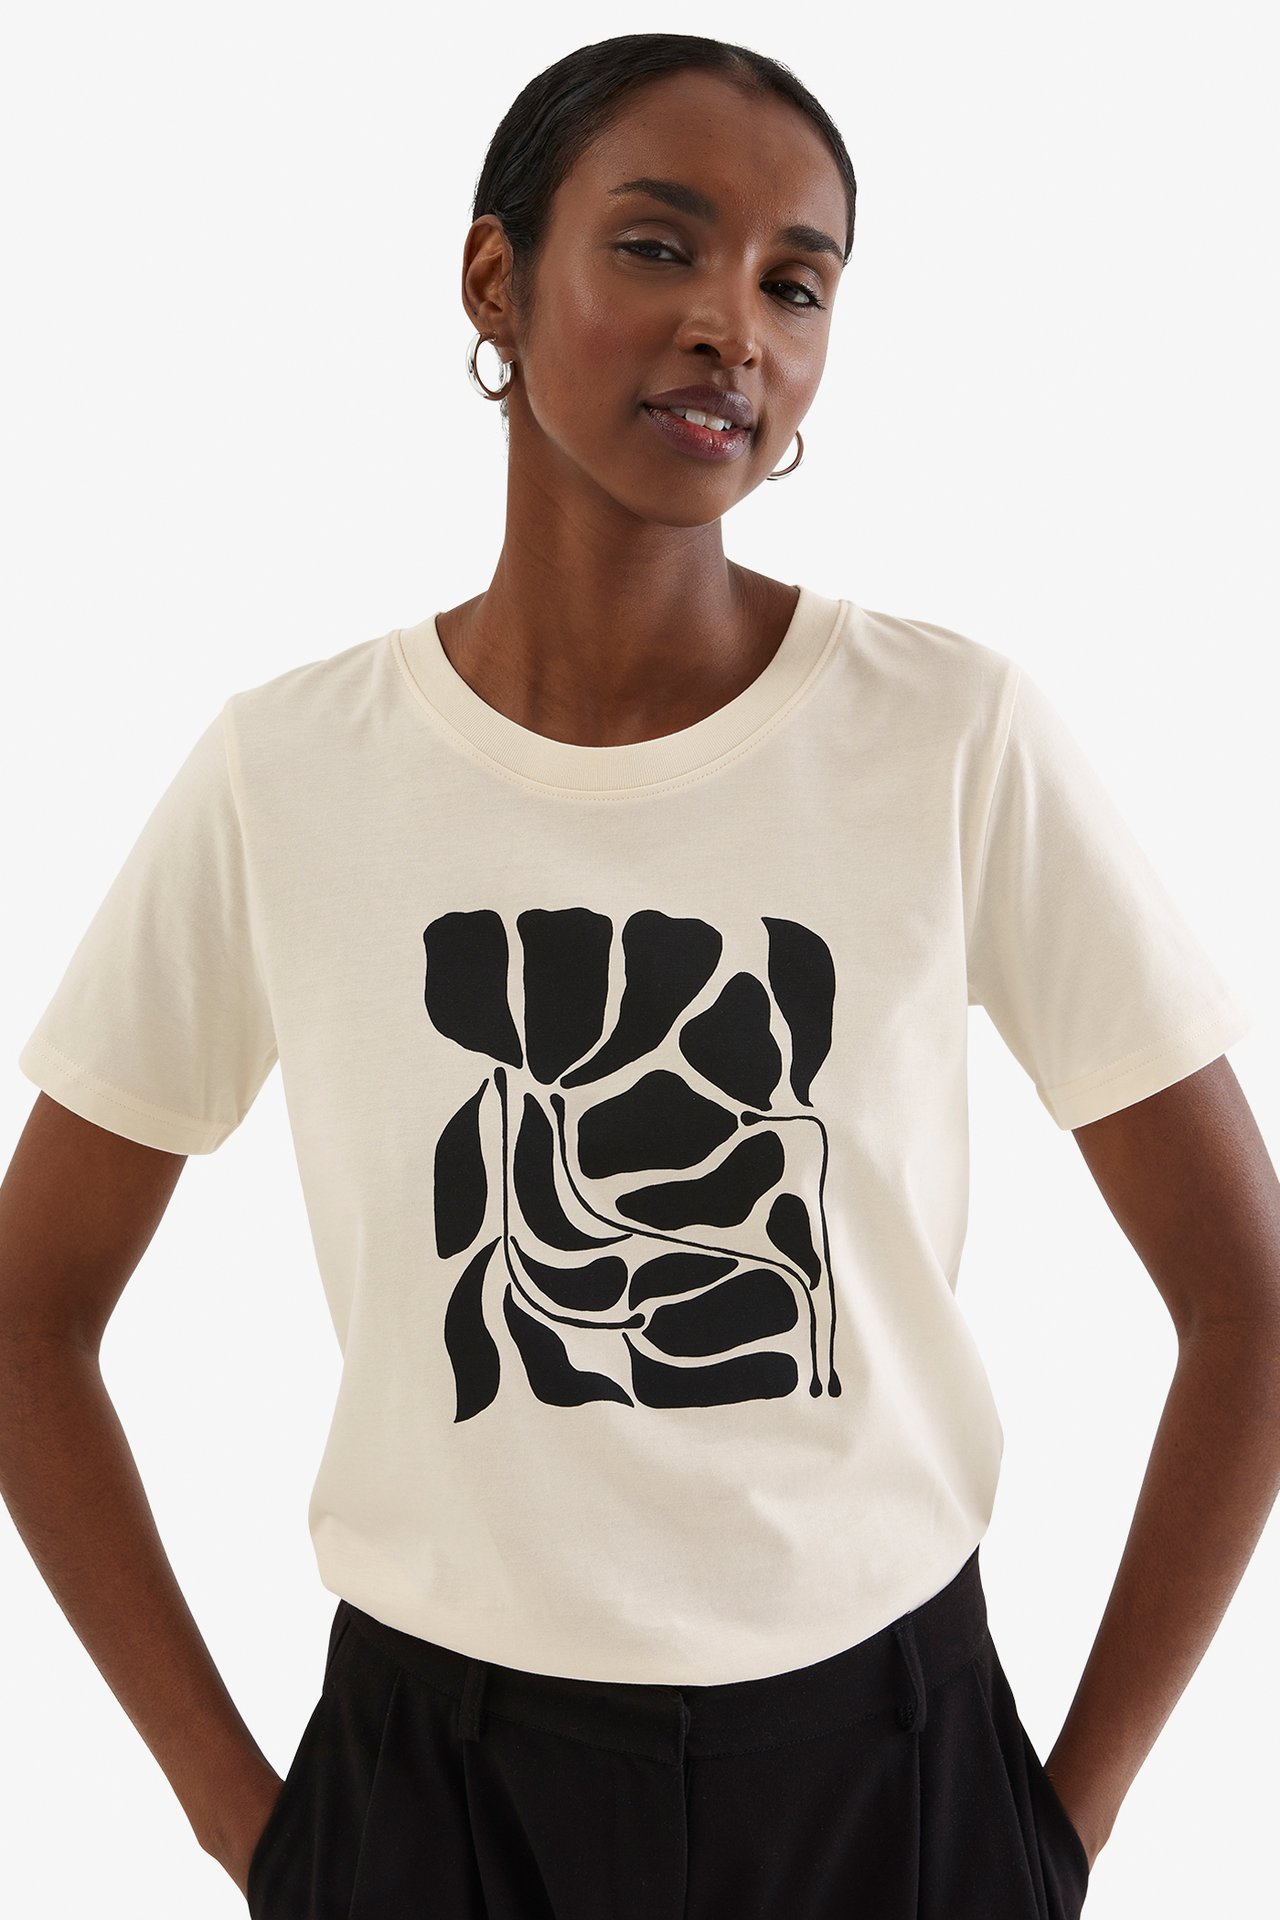 T-paita, jossa on painatus - Luonnonvalkoinen - 178cm / Storlek: S - 1